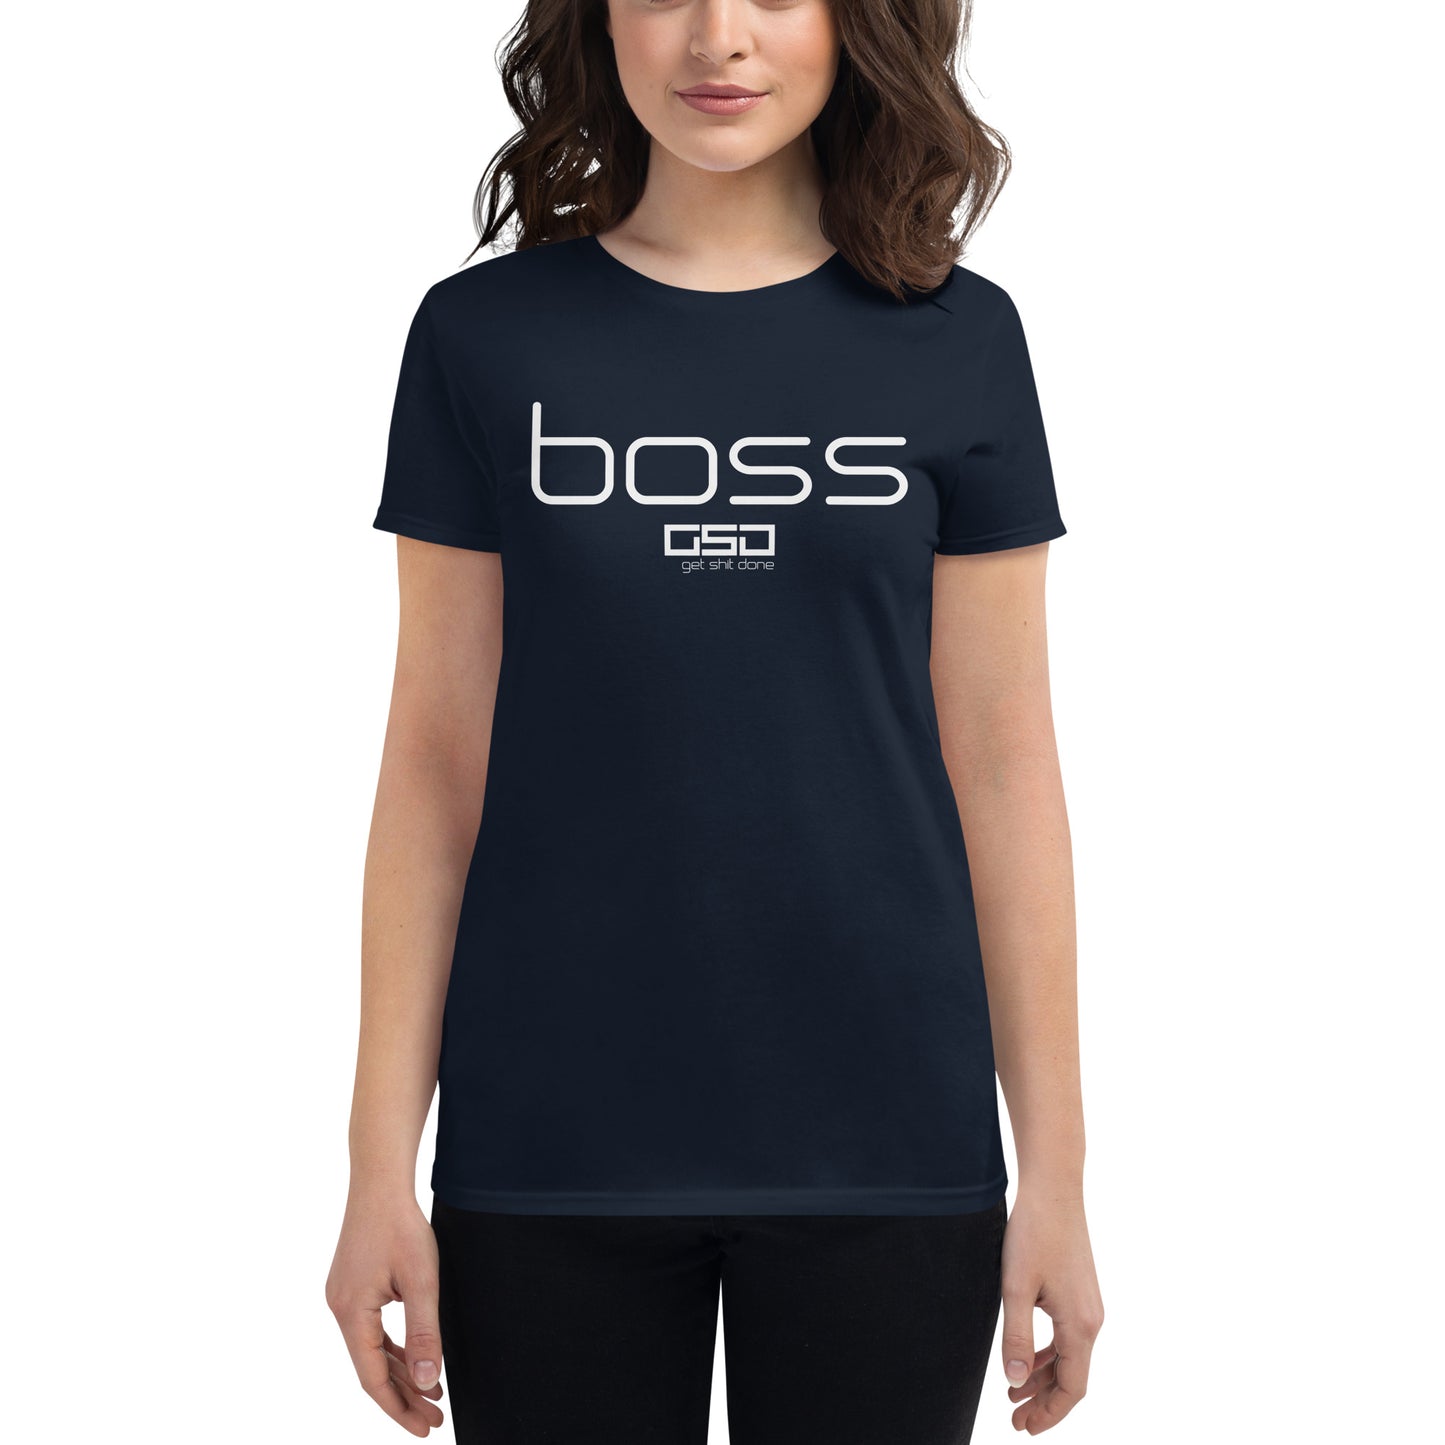 Boss-Women's short sleeve t-shirt